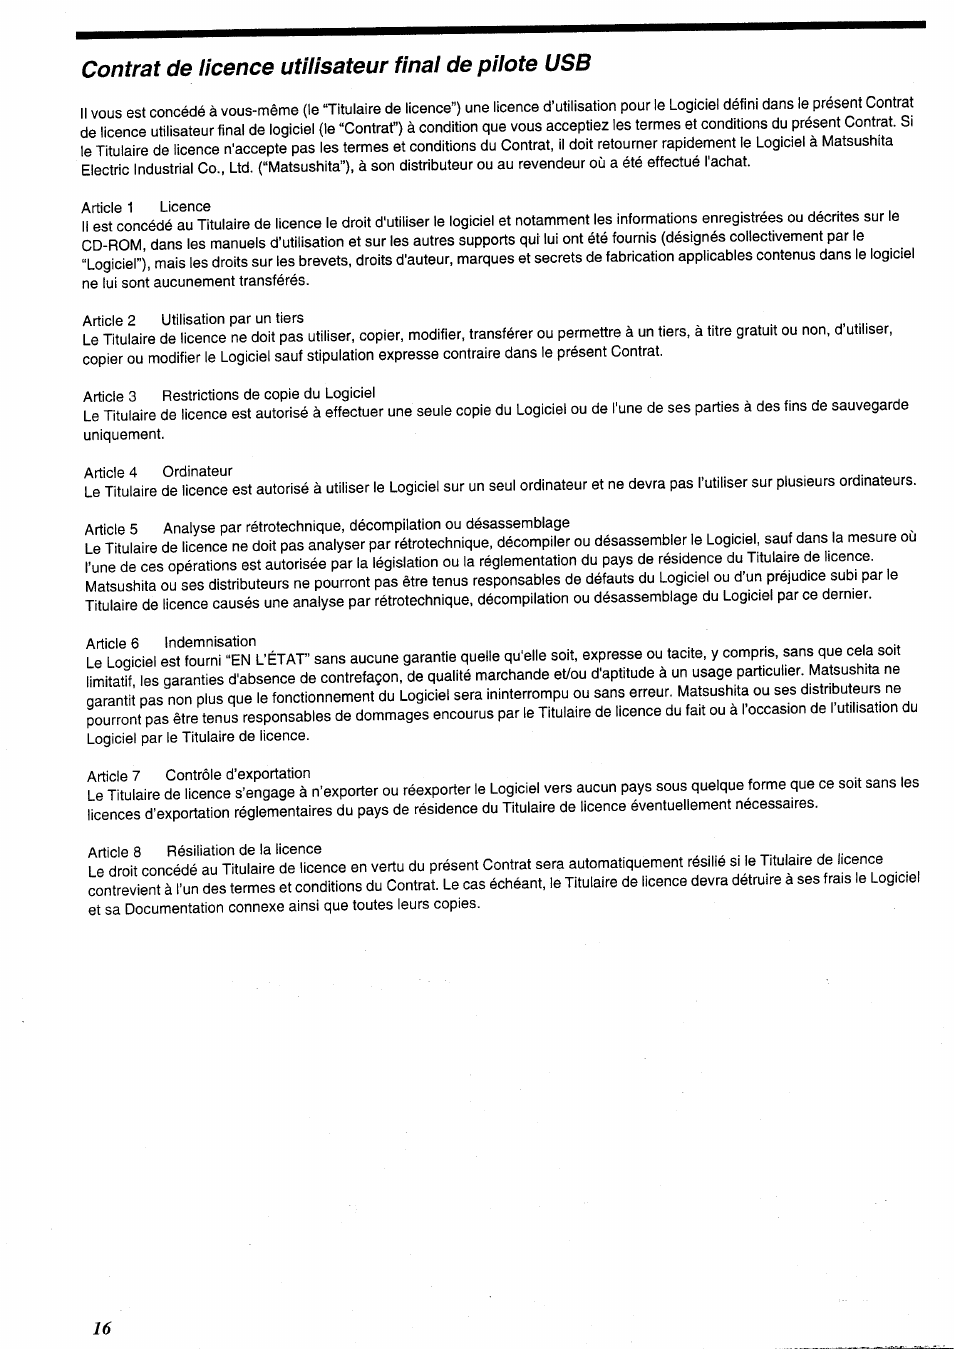 Contrat de licence utilisateur final de pilote usb | Panasonic USBKit Manuel d'utilisation | Page 2 / 29